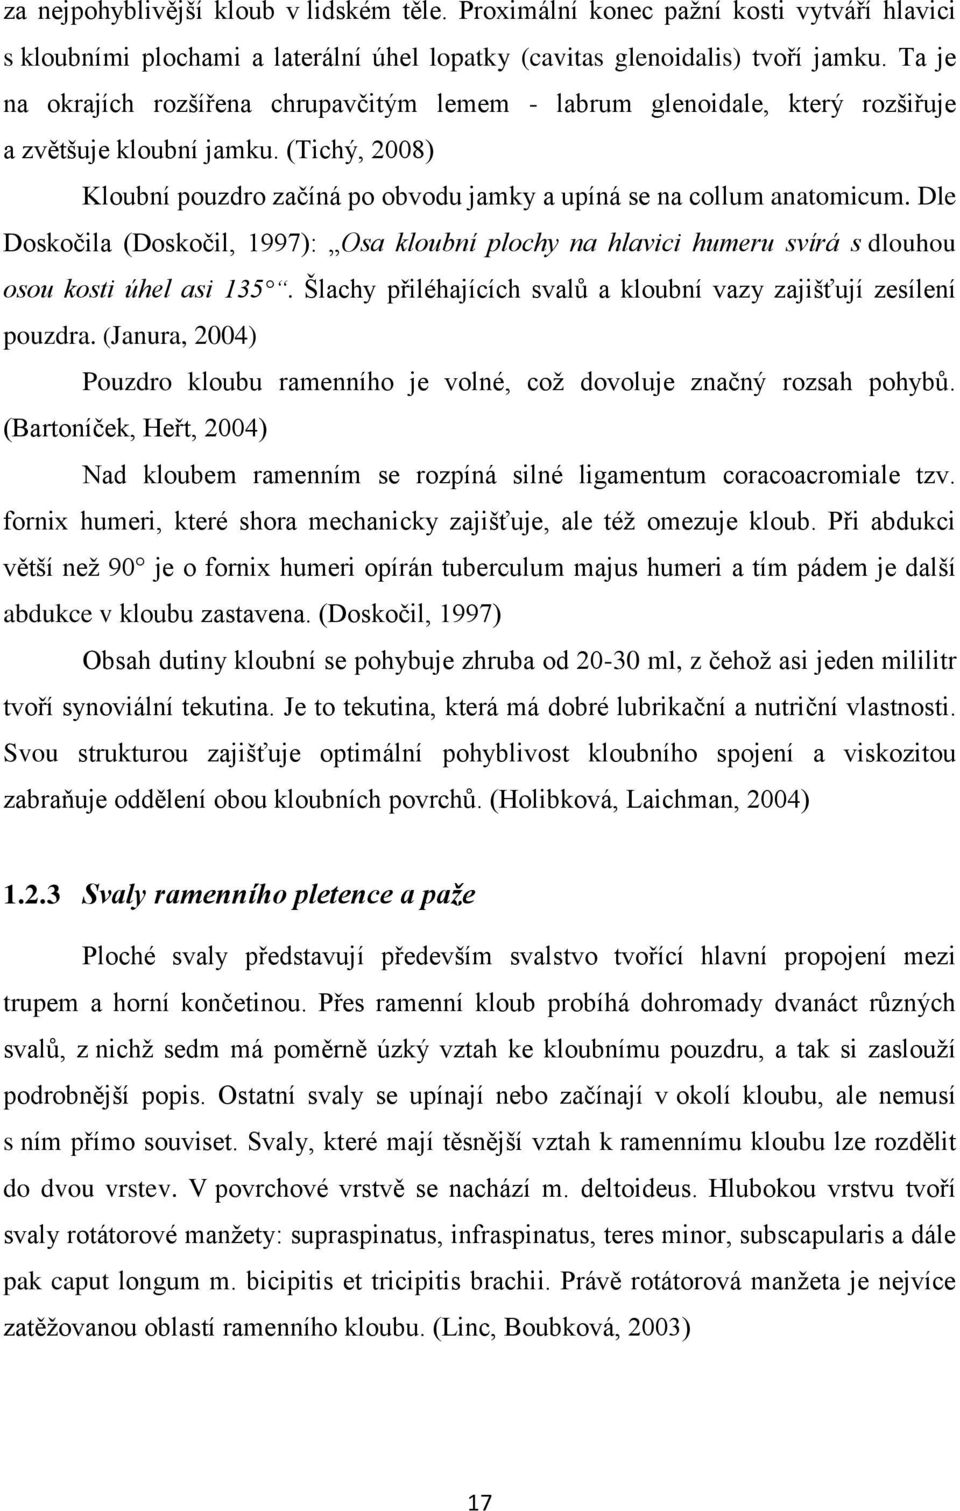 Dle Doskočila (Doskočil, 1997): Osa kloubní plochy na hlavici humeru svírá s dlouhou osou kosti úhel asi 135. Šlachy přiléhajících svalů a kloubní vazy zajišťují zesílení pouzdra.